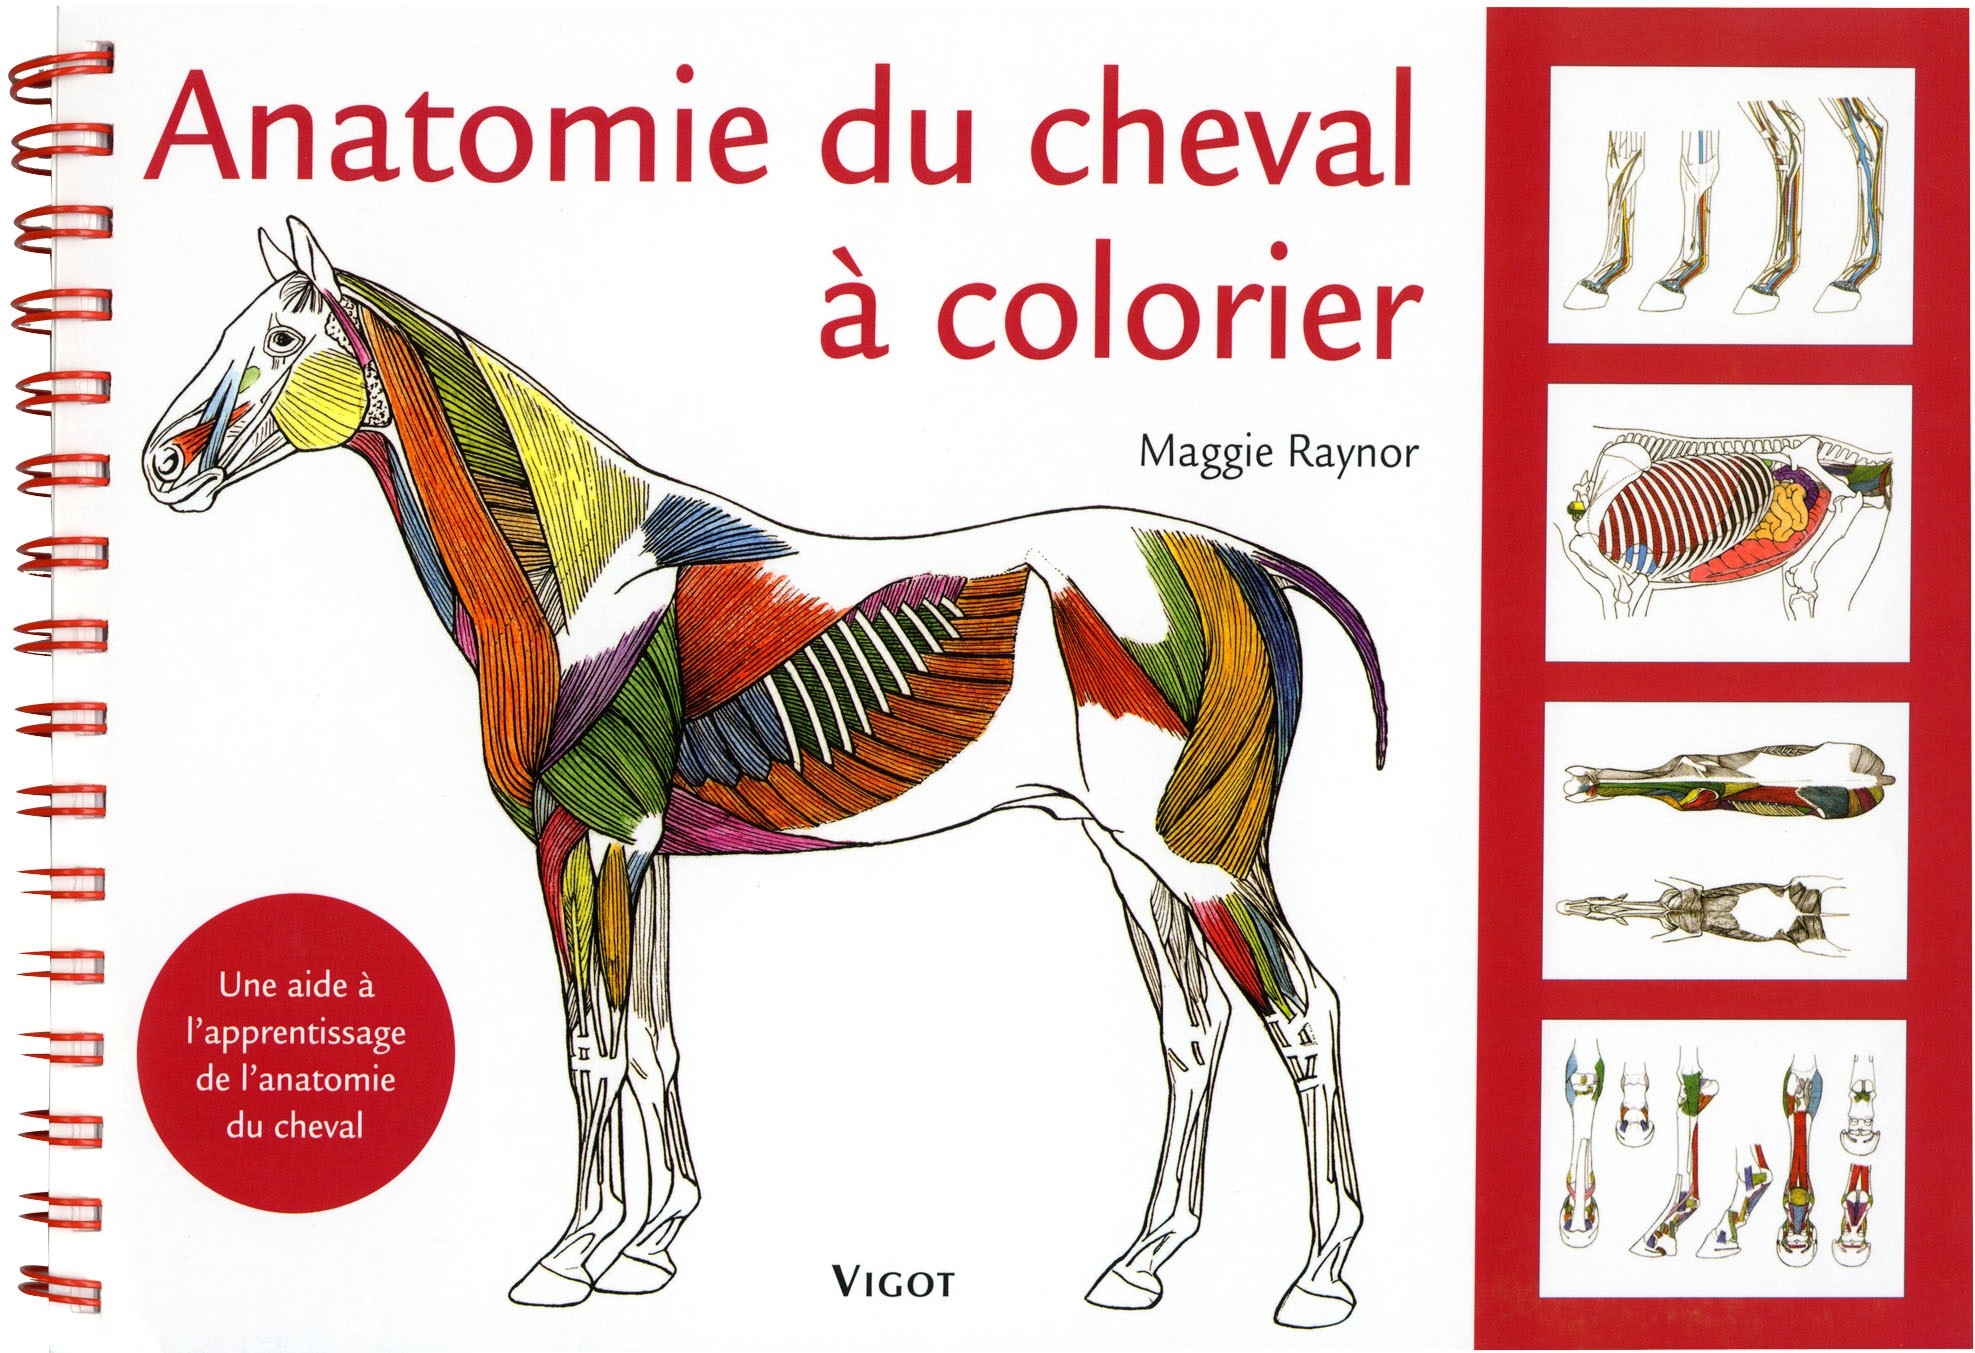 ANATOMIE DU CHEVAL À COLORIER - M. Raynor, livre sur les chevaux